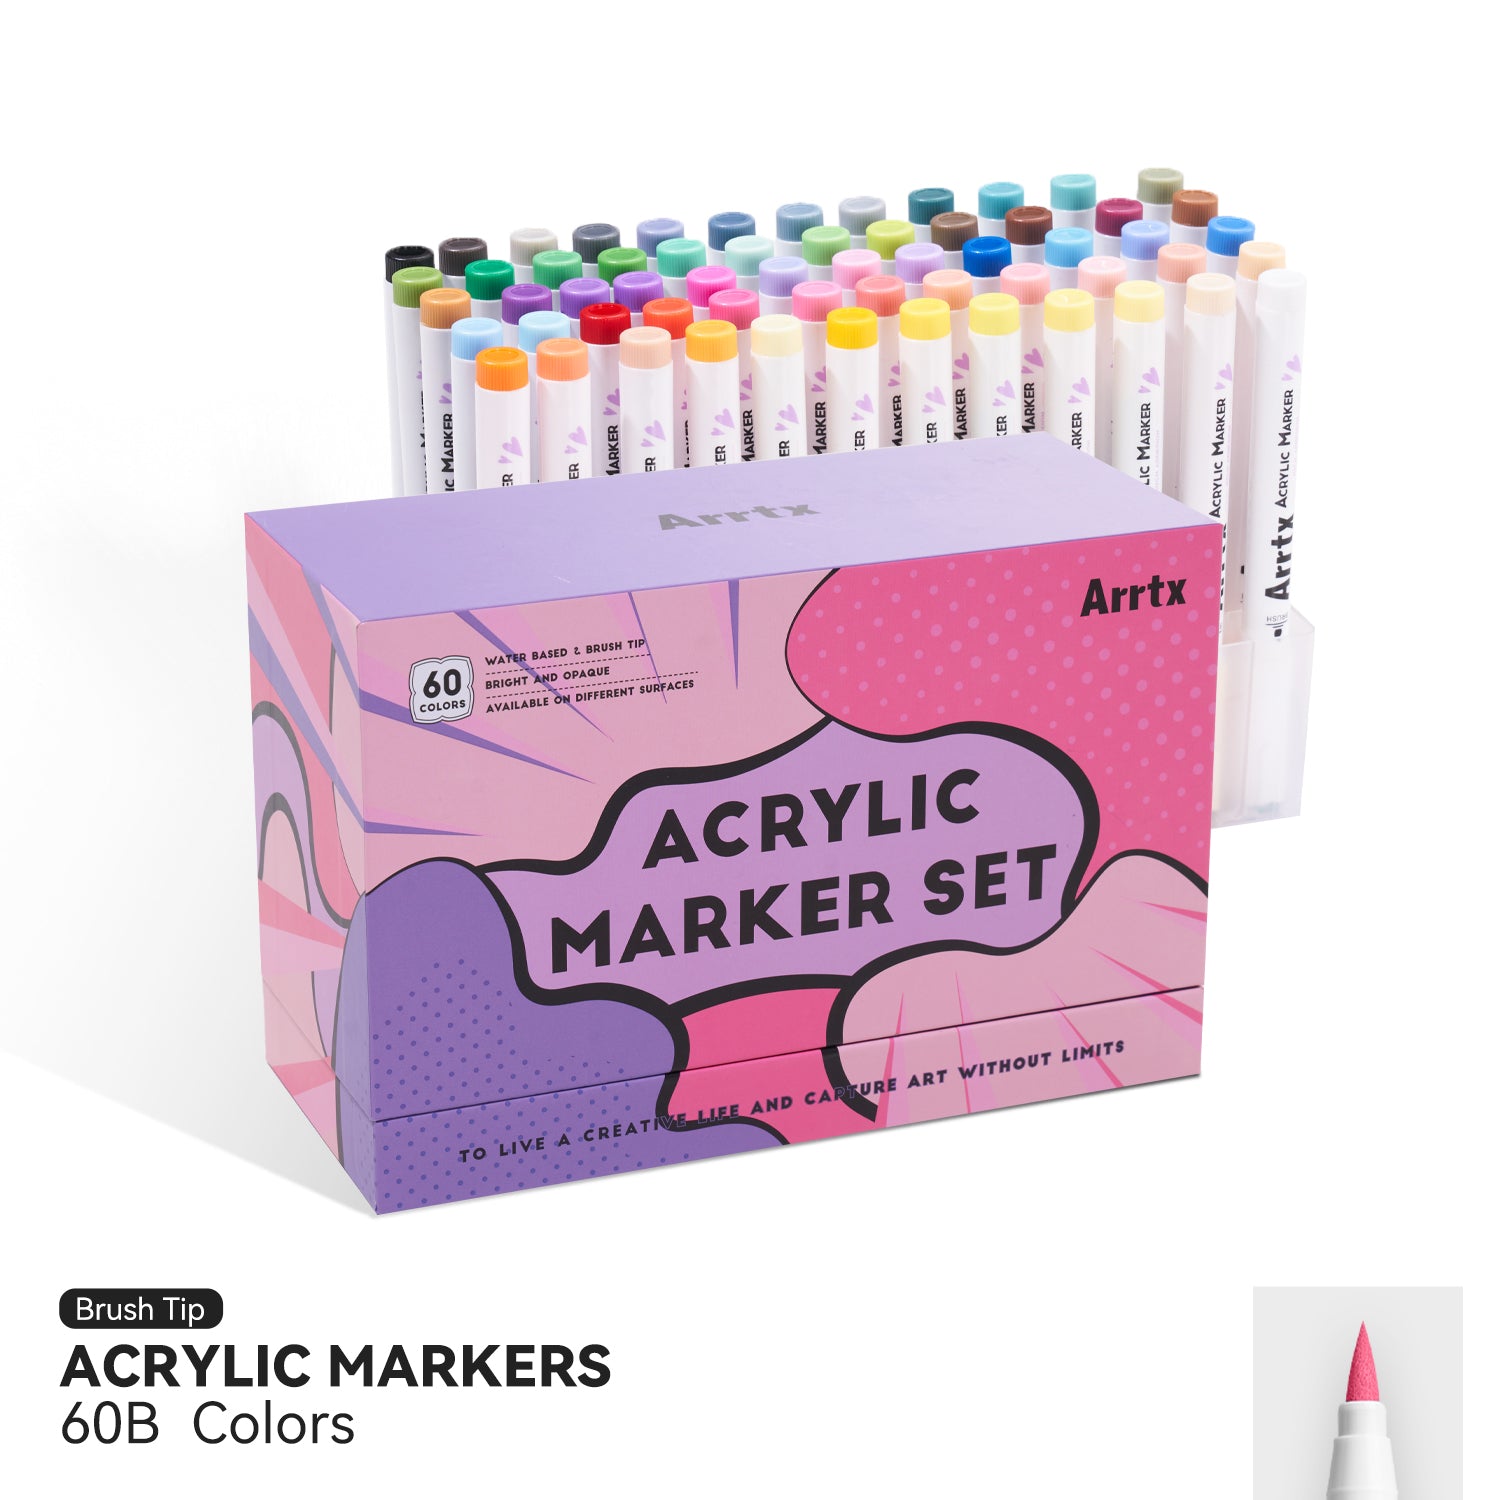 Arrtx Paint Pens 60 Colors Acrylic Marker Brush Tip Art Supplies 60B